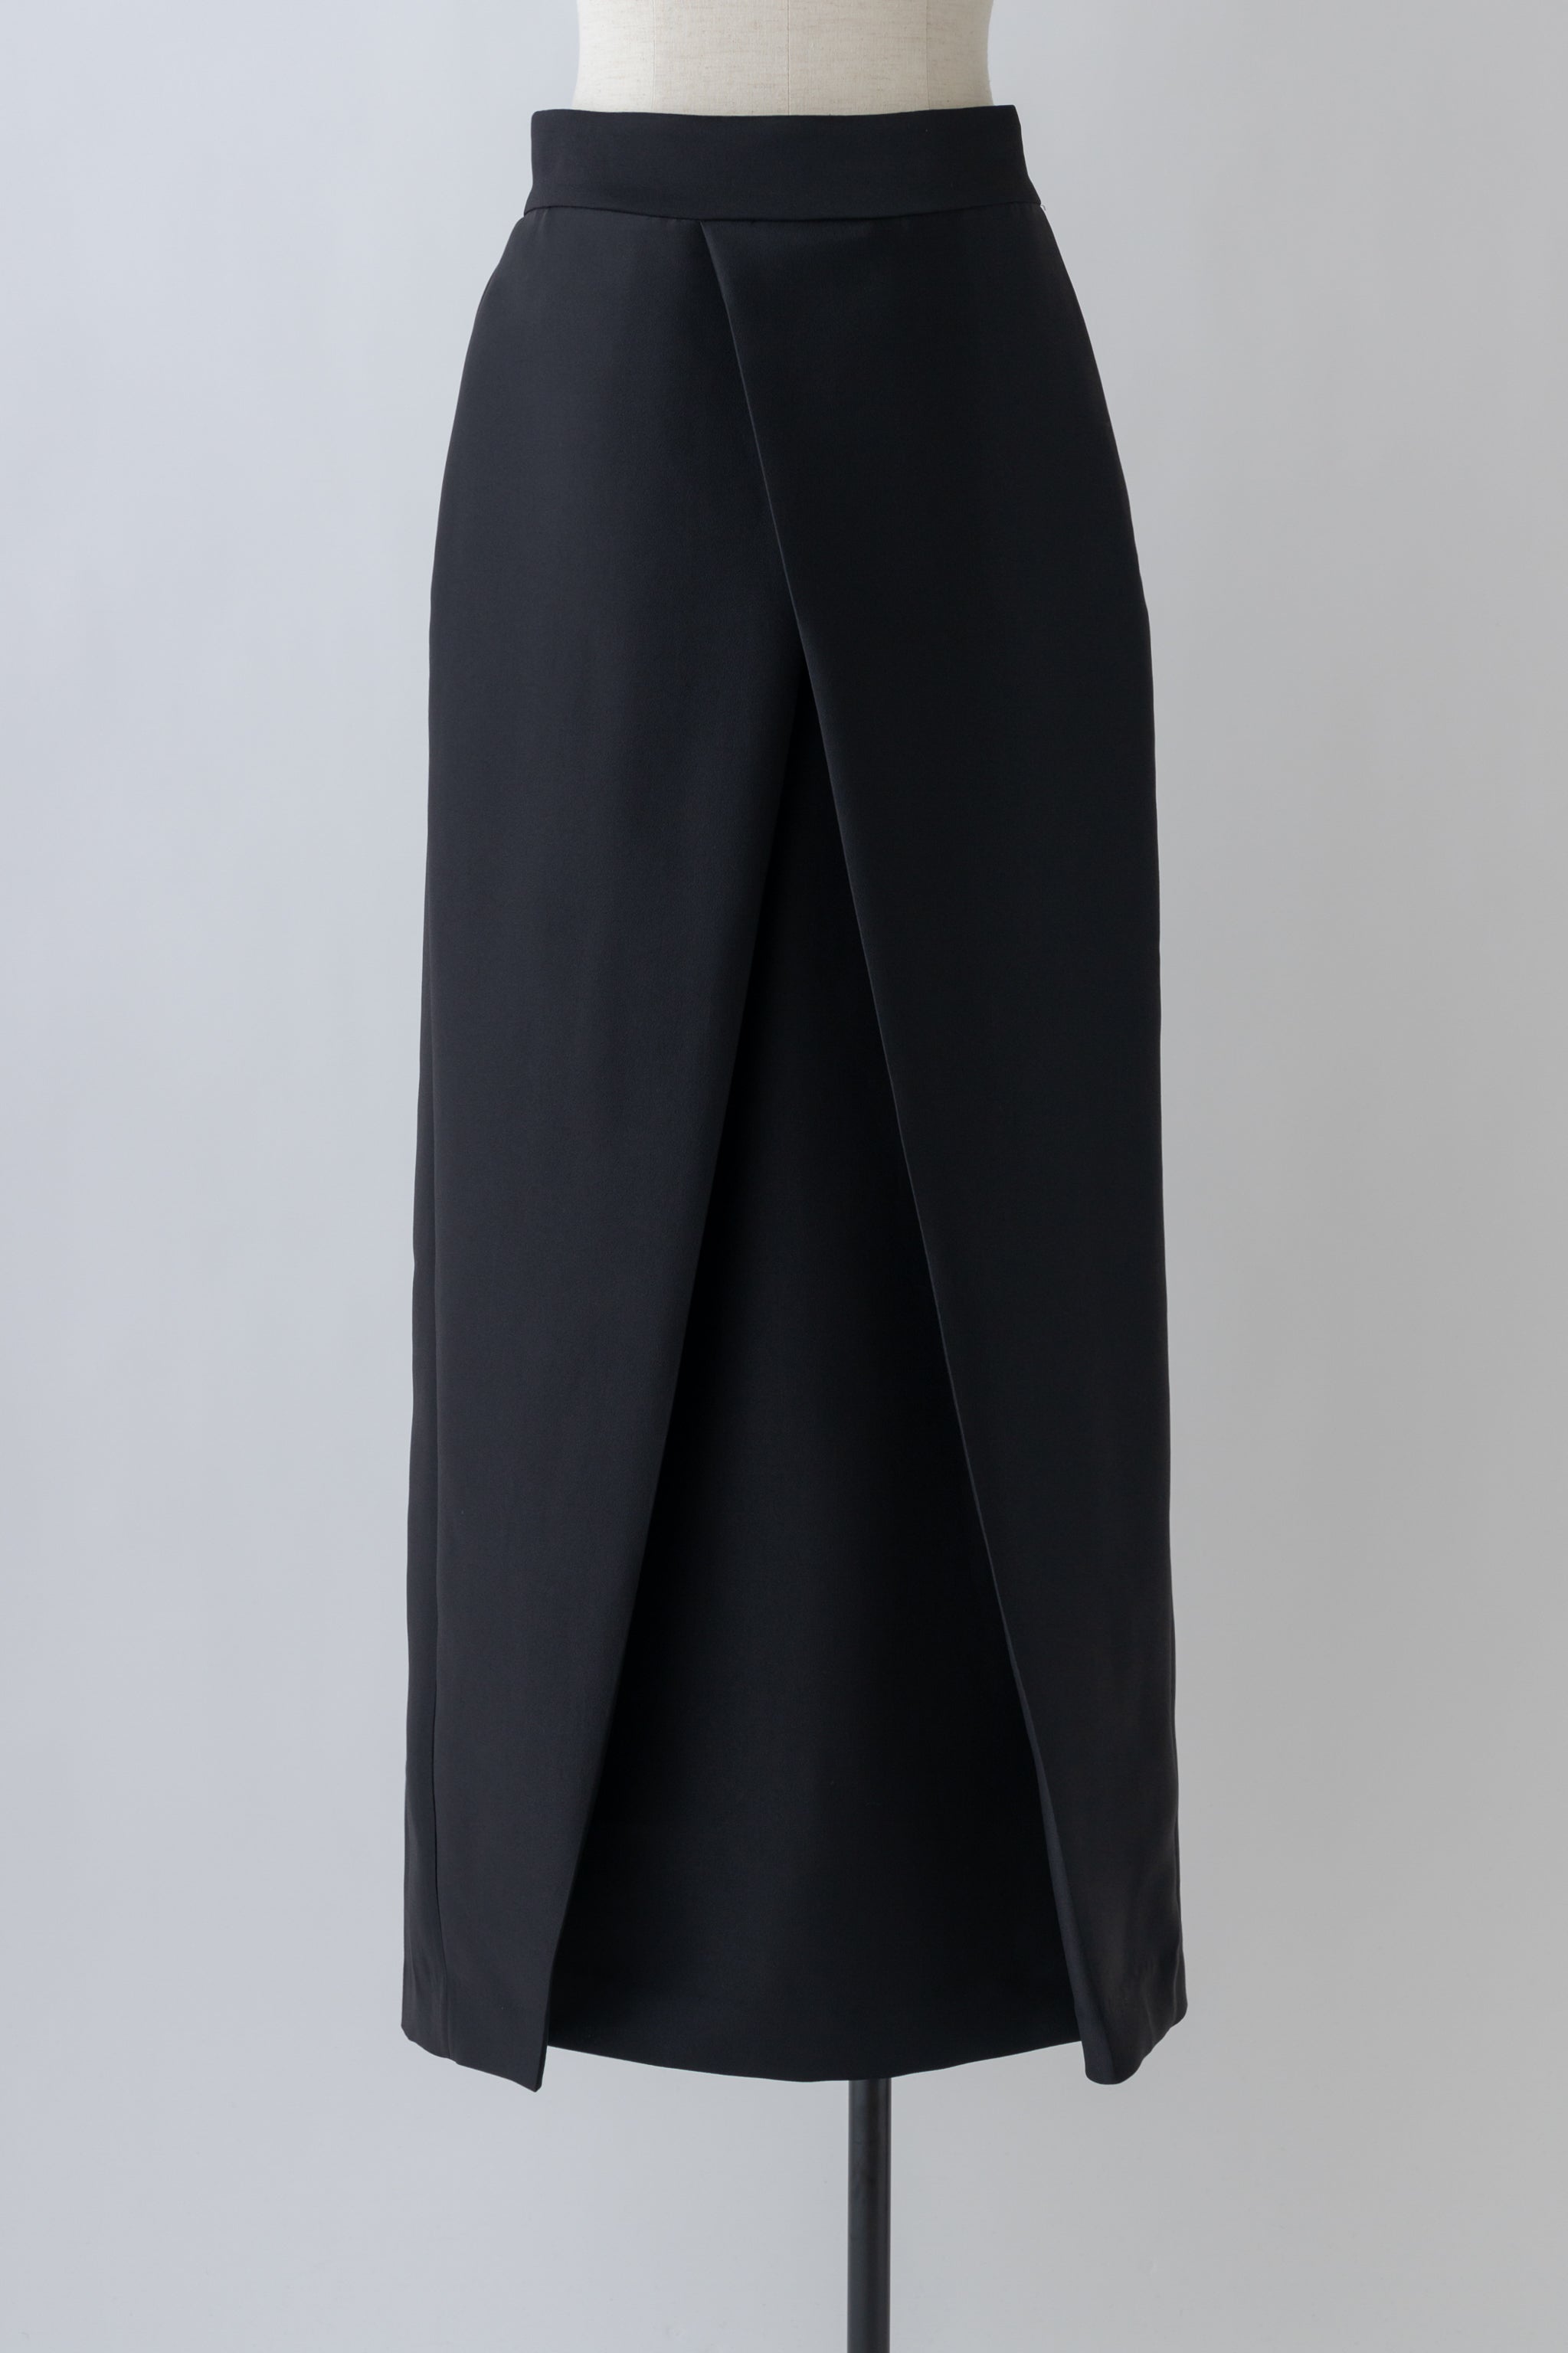 Silkey sheer Skirt-BLACK – SETENS